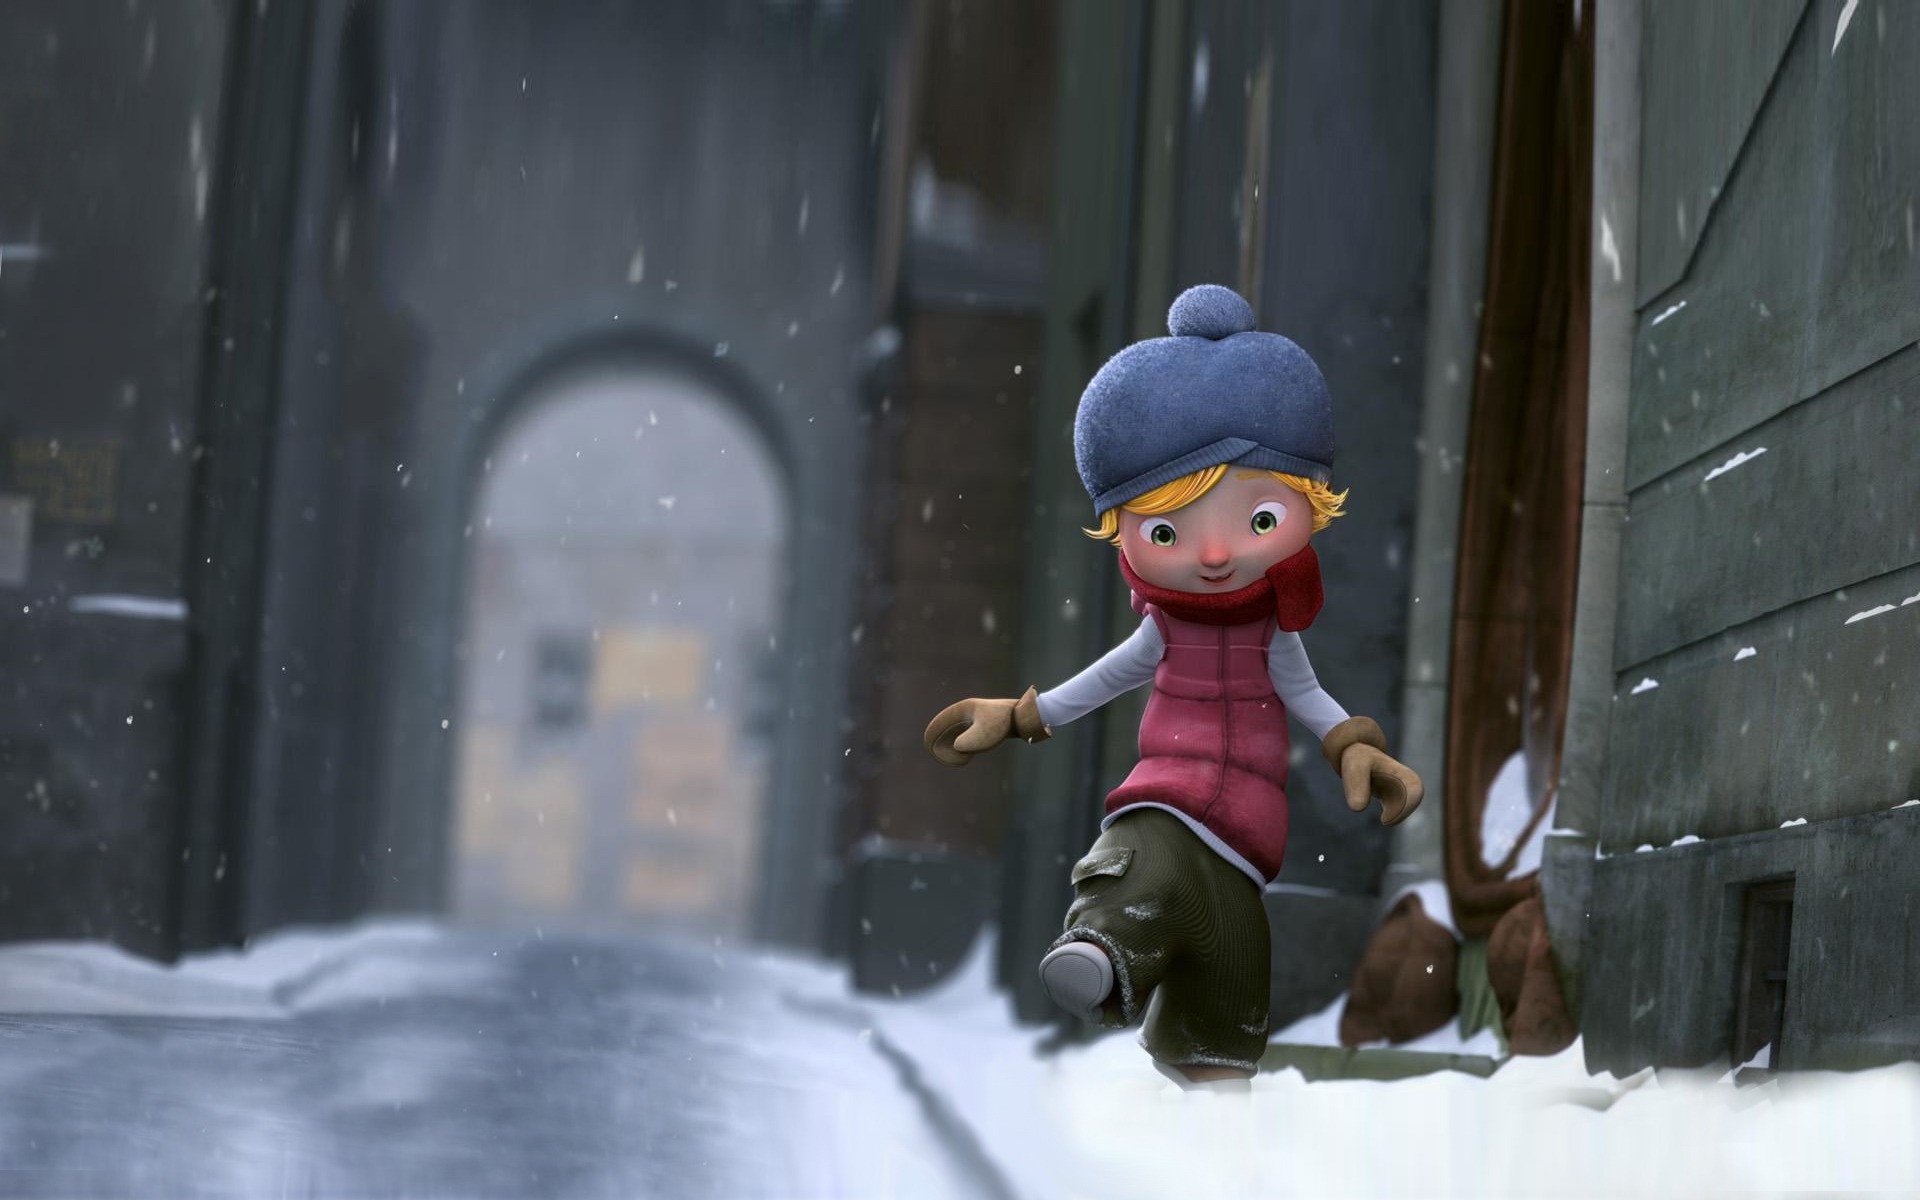 мультфильмы снег зима один конкурс взрослый ребенок действие носить дневной свет на открытом воздухе холодная улица человек портрет мультфильм